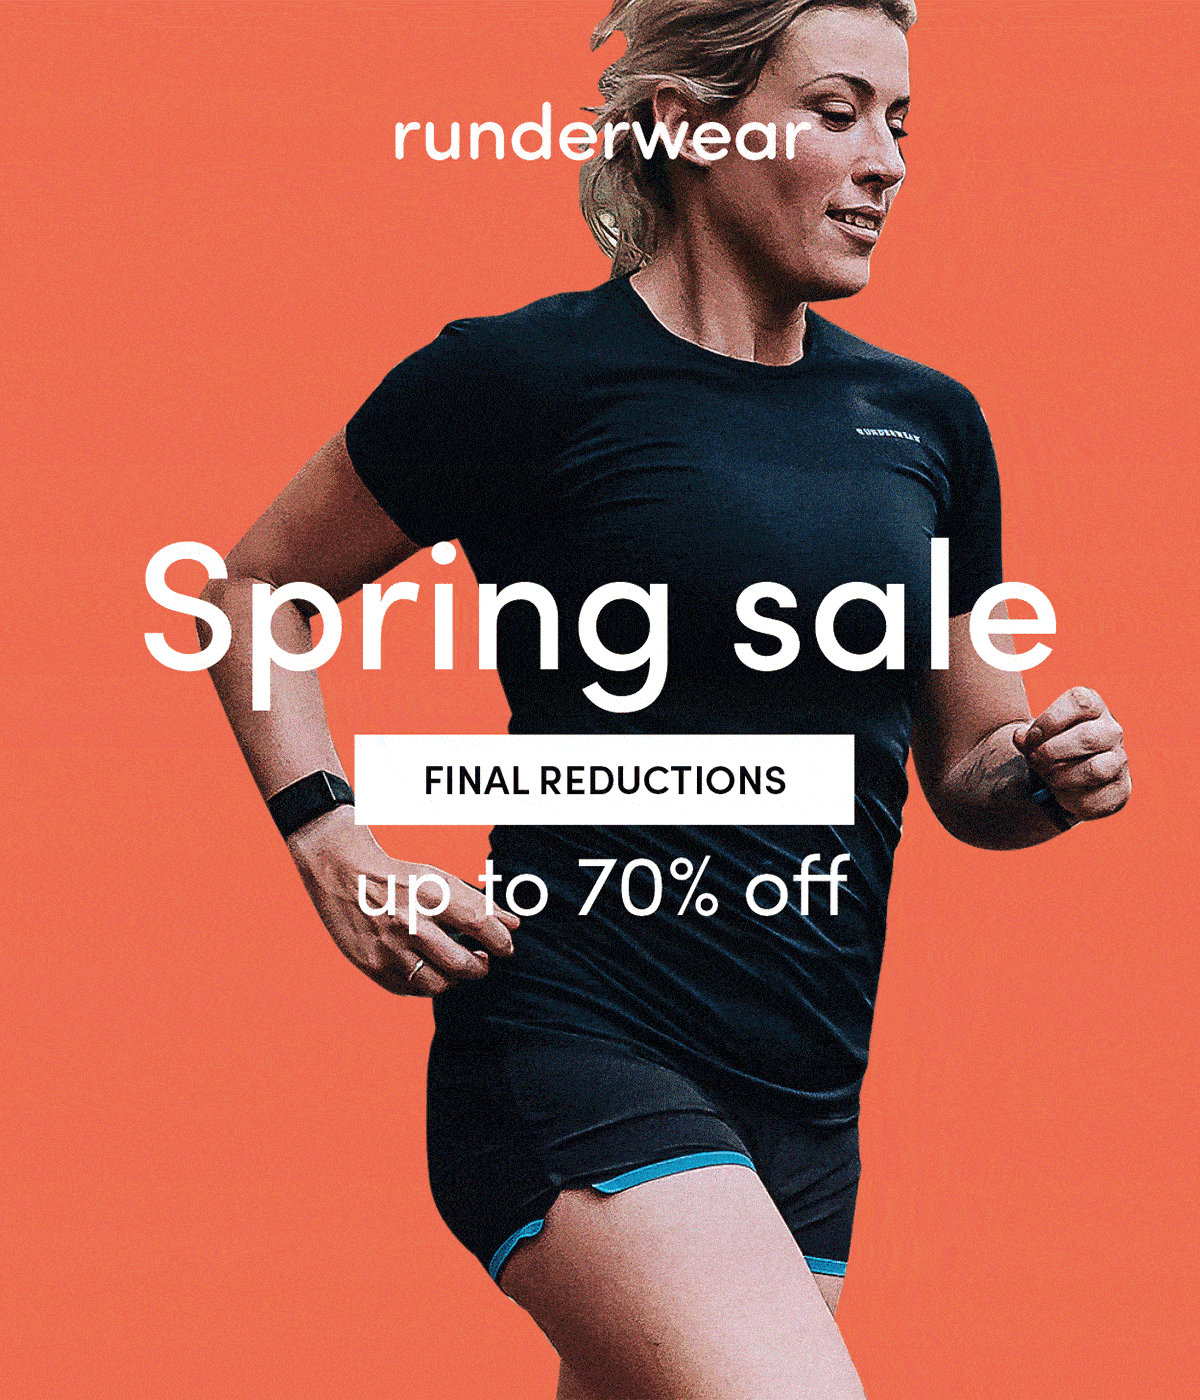 Runderwear Spring Sale